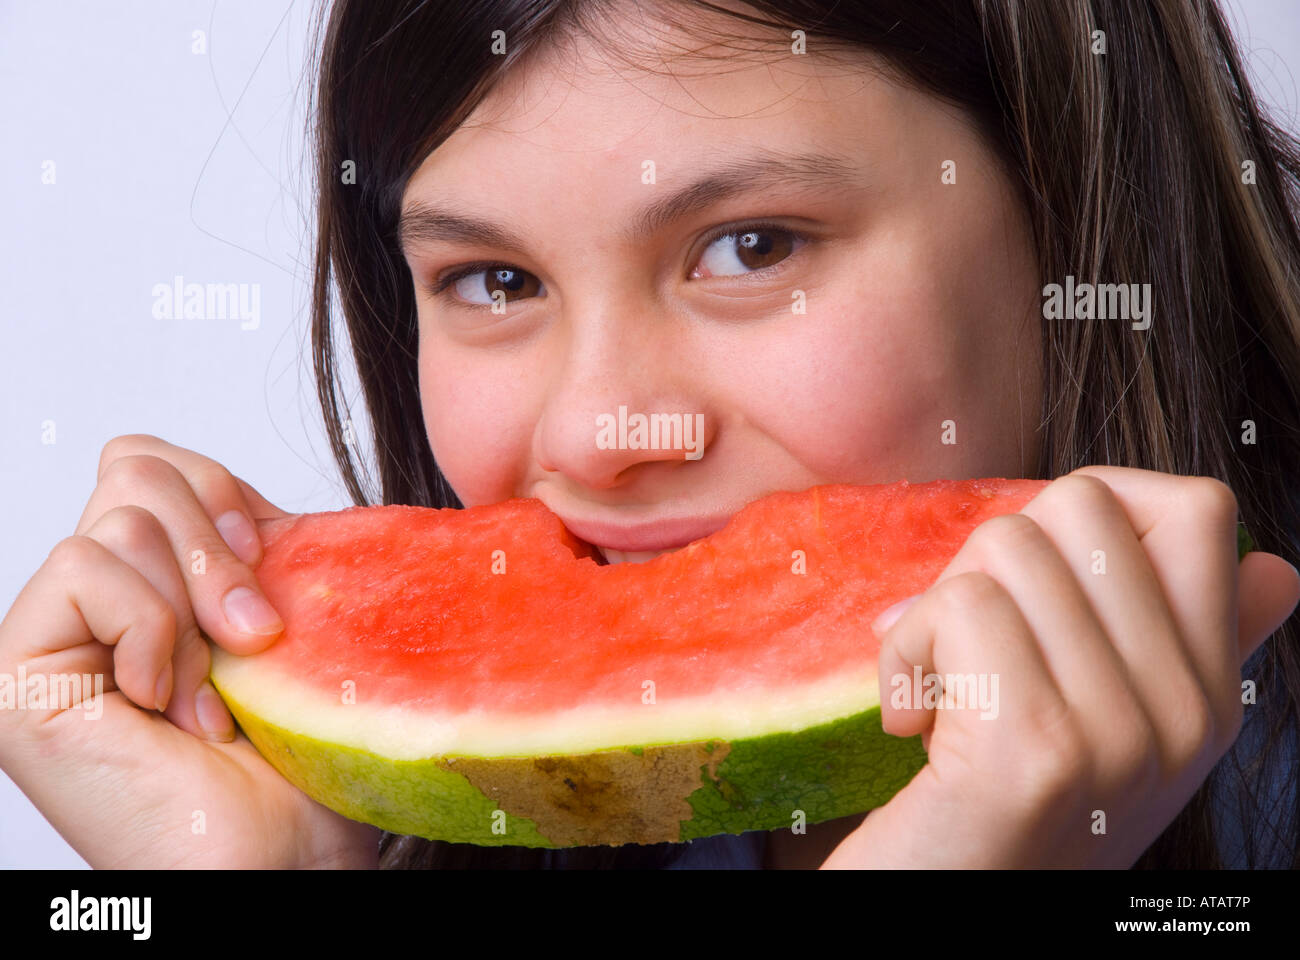 Giovane ragazza sorridente che mangia una fetta di anguria matura senza semi Foto Stock